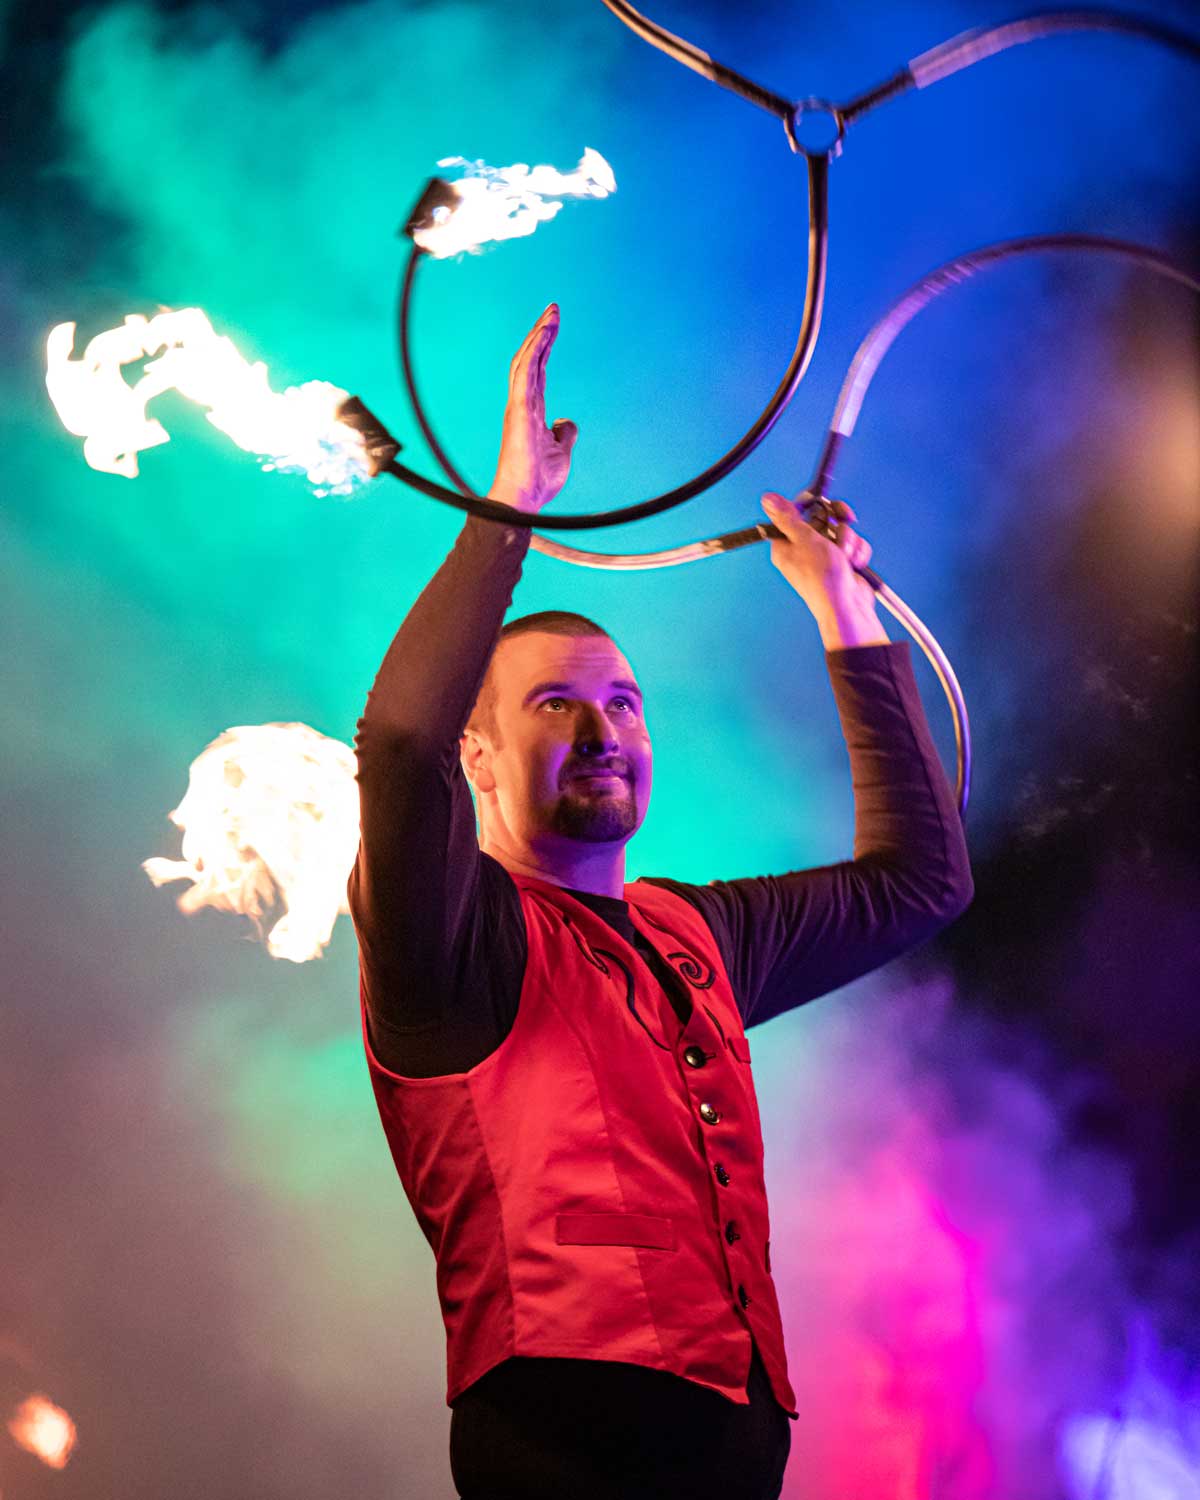 Hier jongliert ein Feuerknstler (/images/bilder/thumbs/216_3_bild_Hochzeit_Feuershow_Feuerkunstl.jpg)